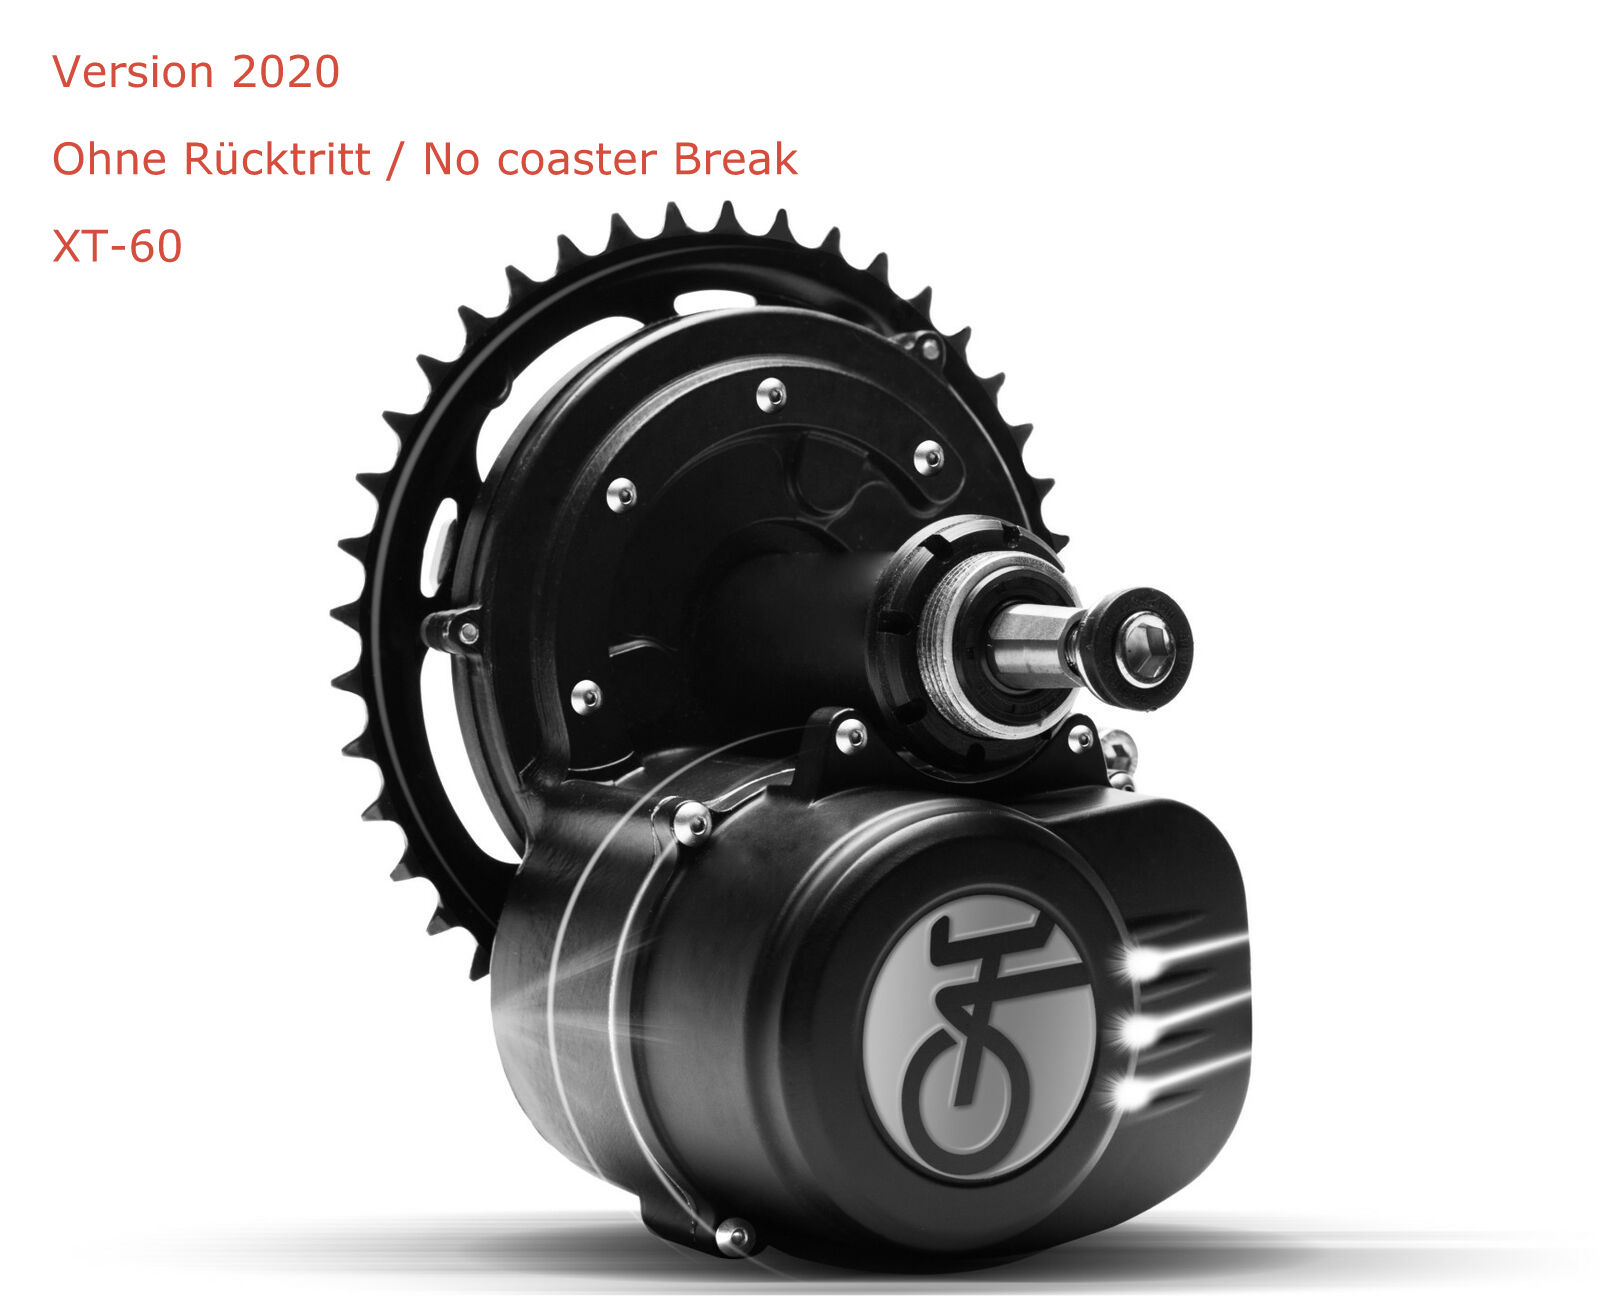 Freilauf - Tongsheng TSDZ2 48V 250W Mittelmotor Freilauf Version 2020